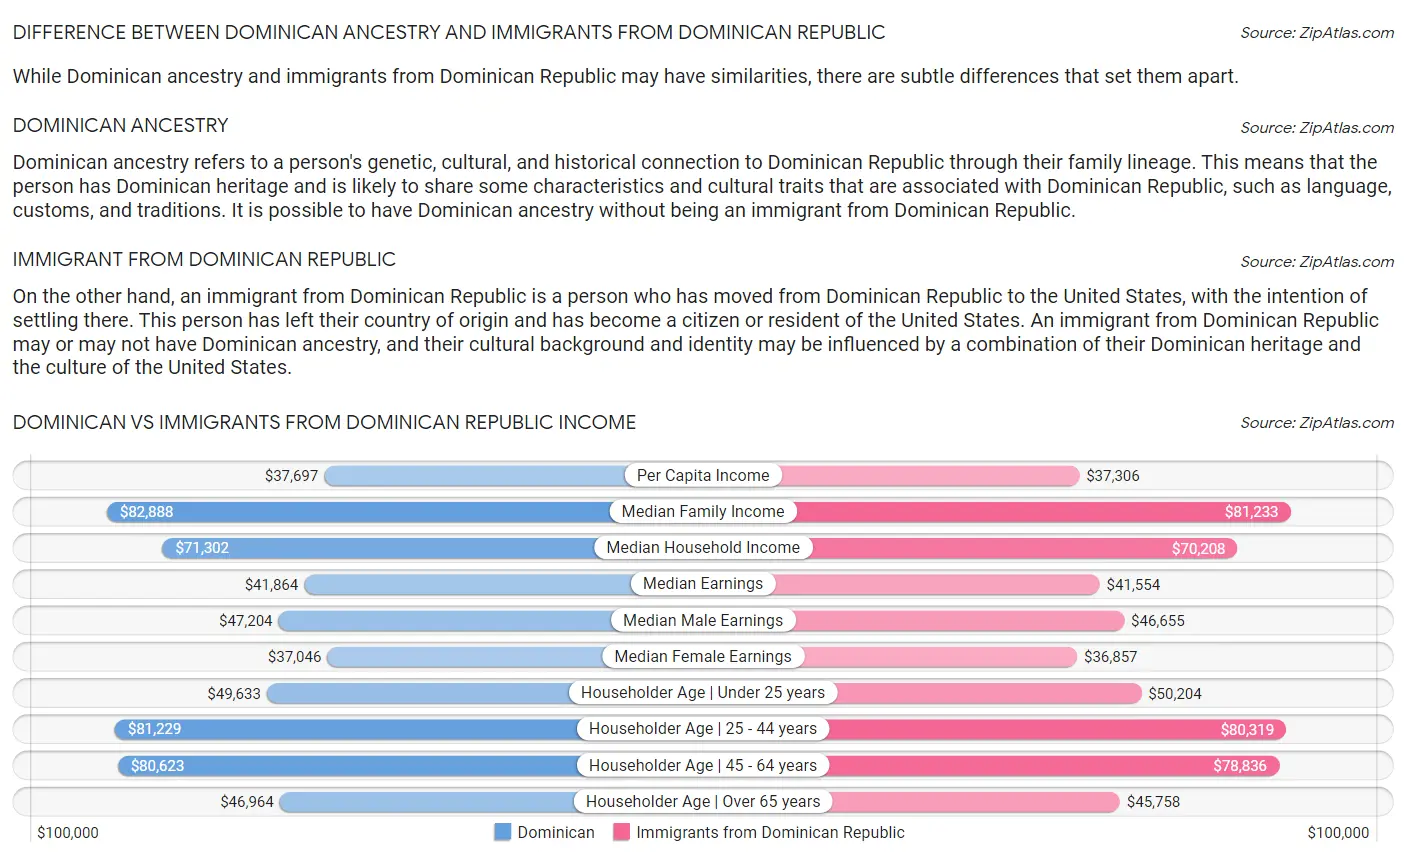 Dominican vs Immigrants from Dominican Republic Income